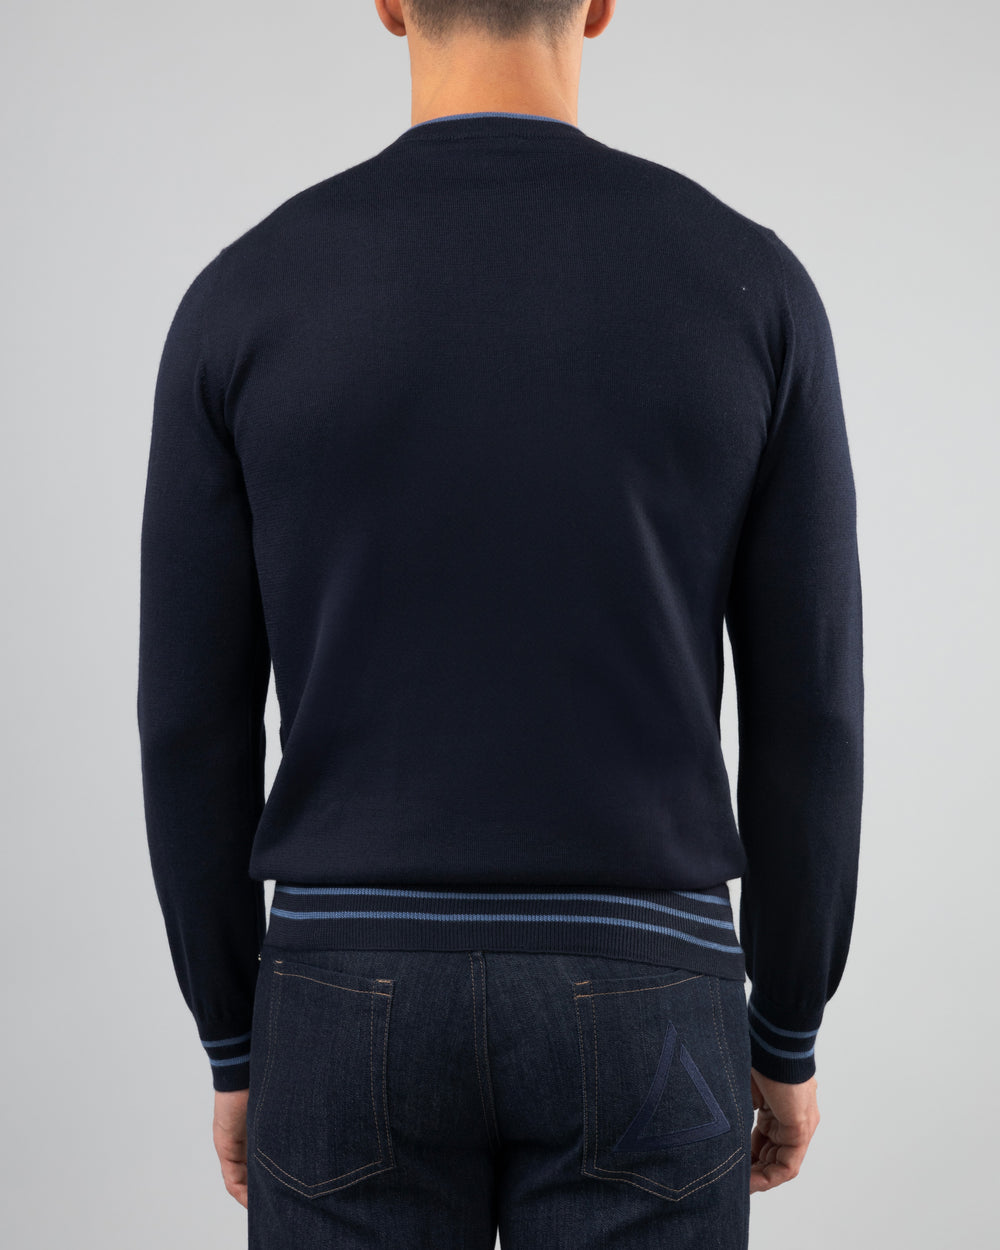 Firn Intarsia Sweater in Cashmere and Silk, Medium Blue